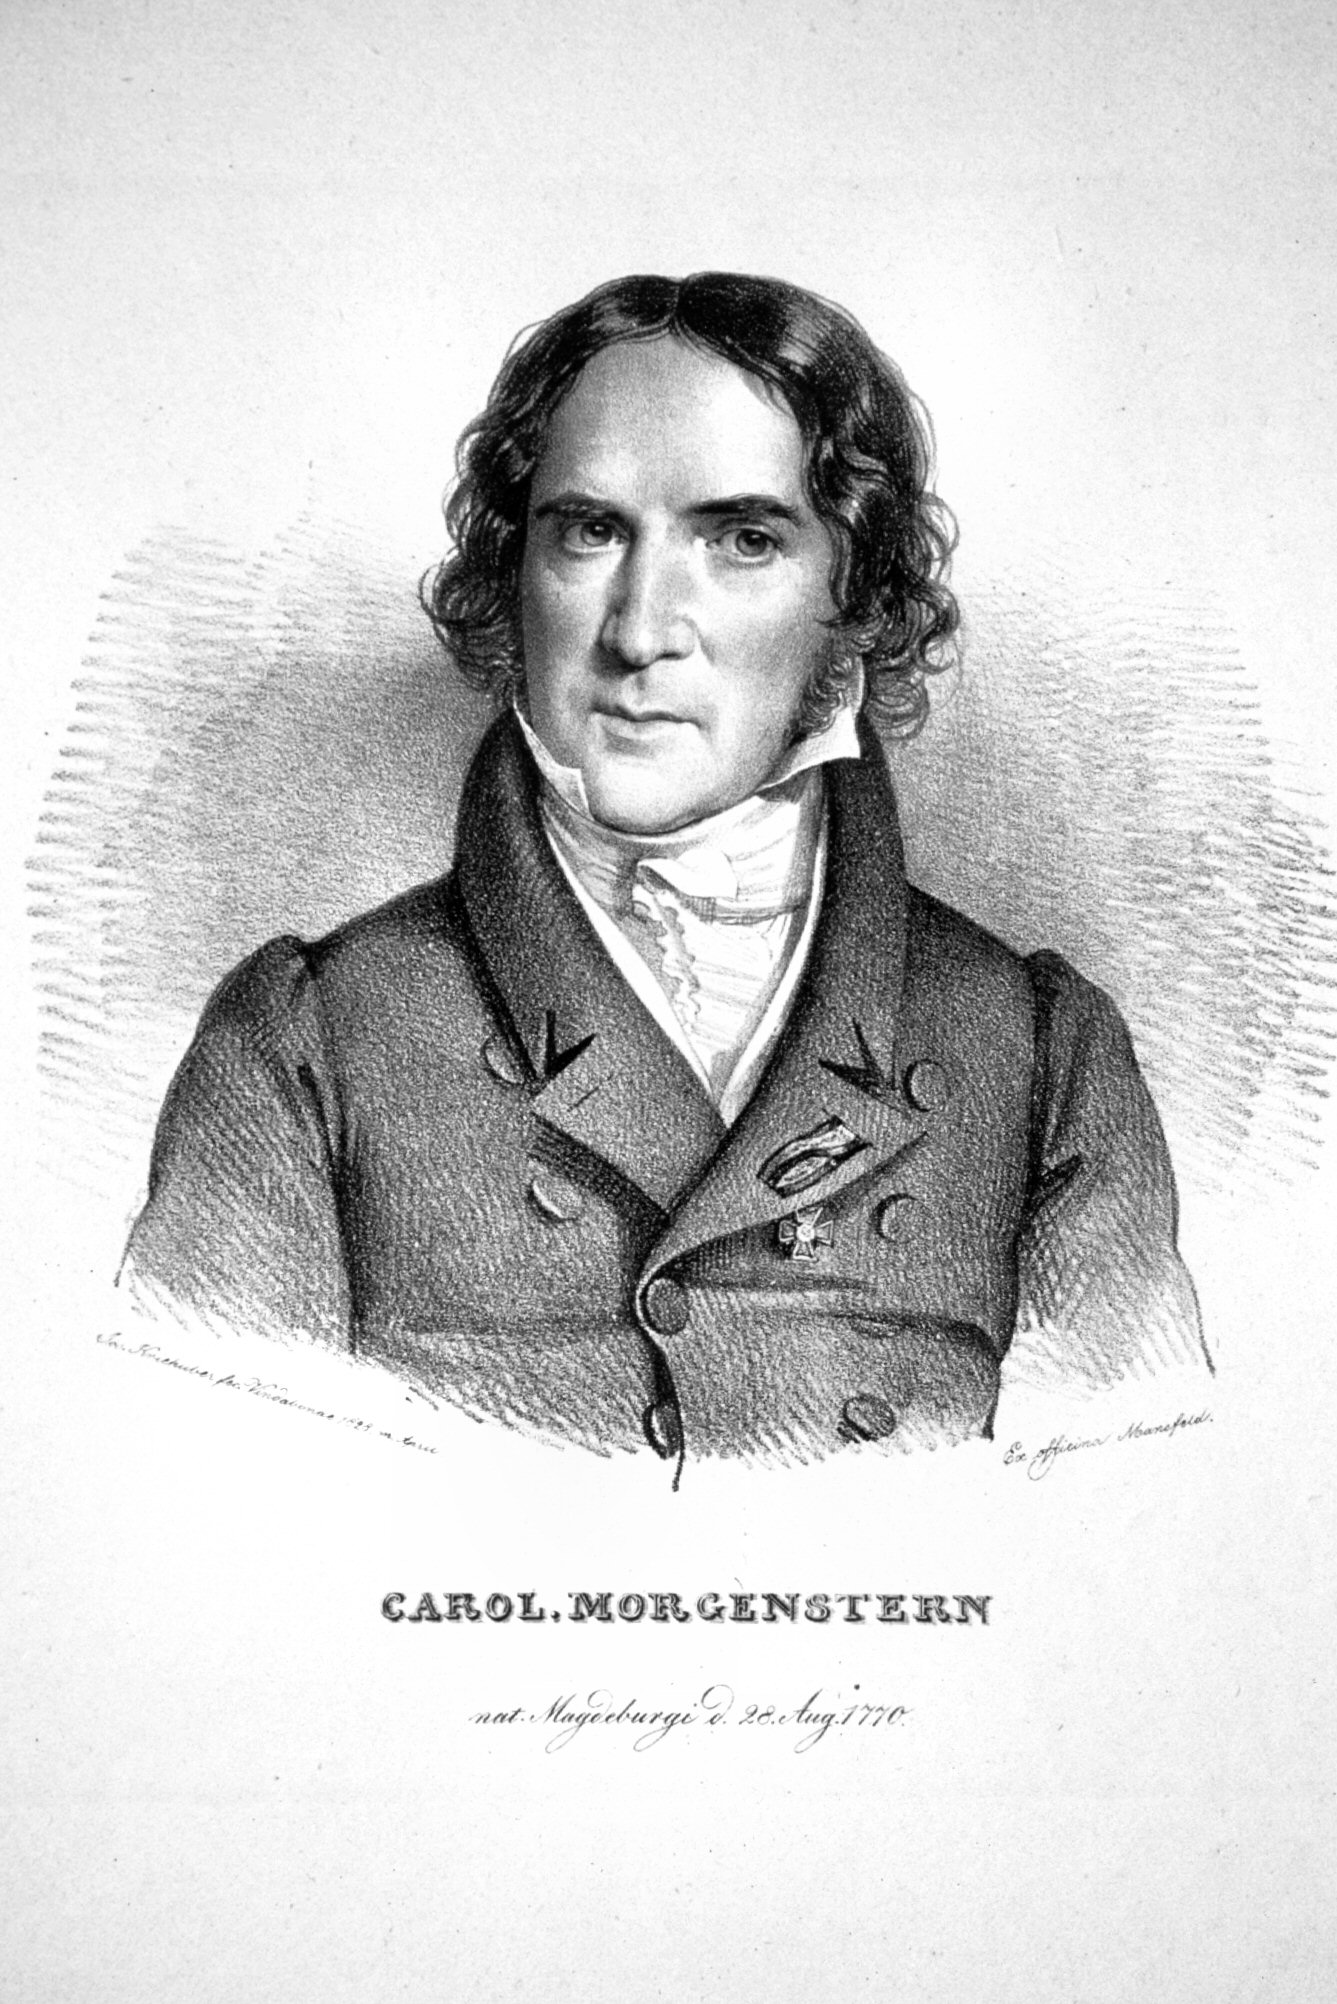 Karl Morgenstern